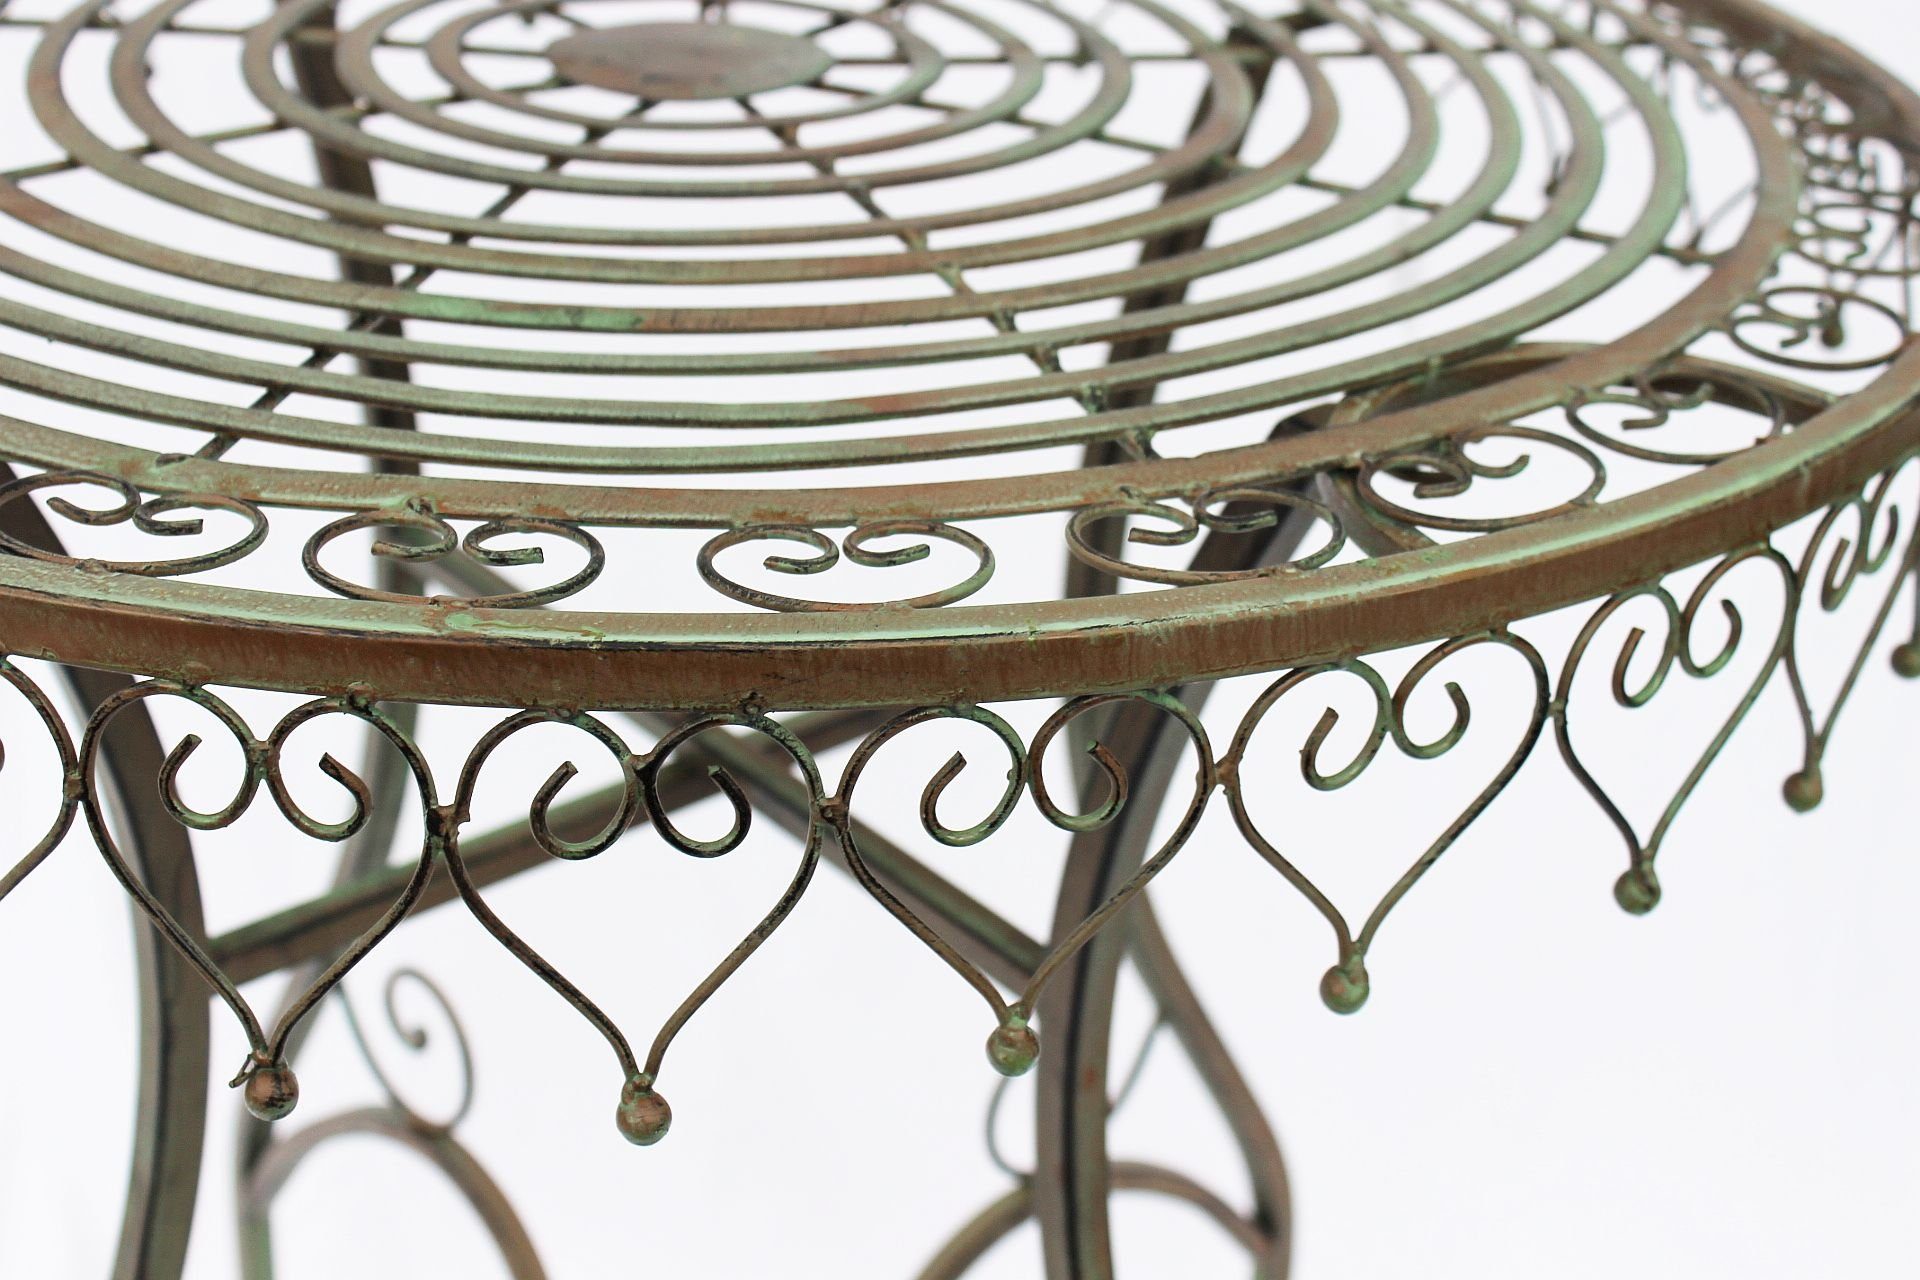 12184 Bistrotisch DanDiBo Gartentisch Tisch Metall Balkontisch Malega Klapptisch Eisentisch Antik Vintage Gartentisch DanDiBo Rund Bistro